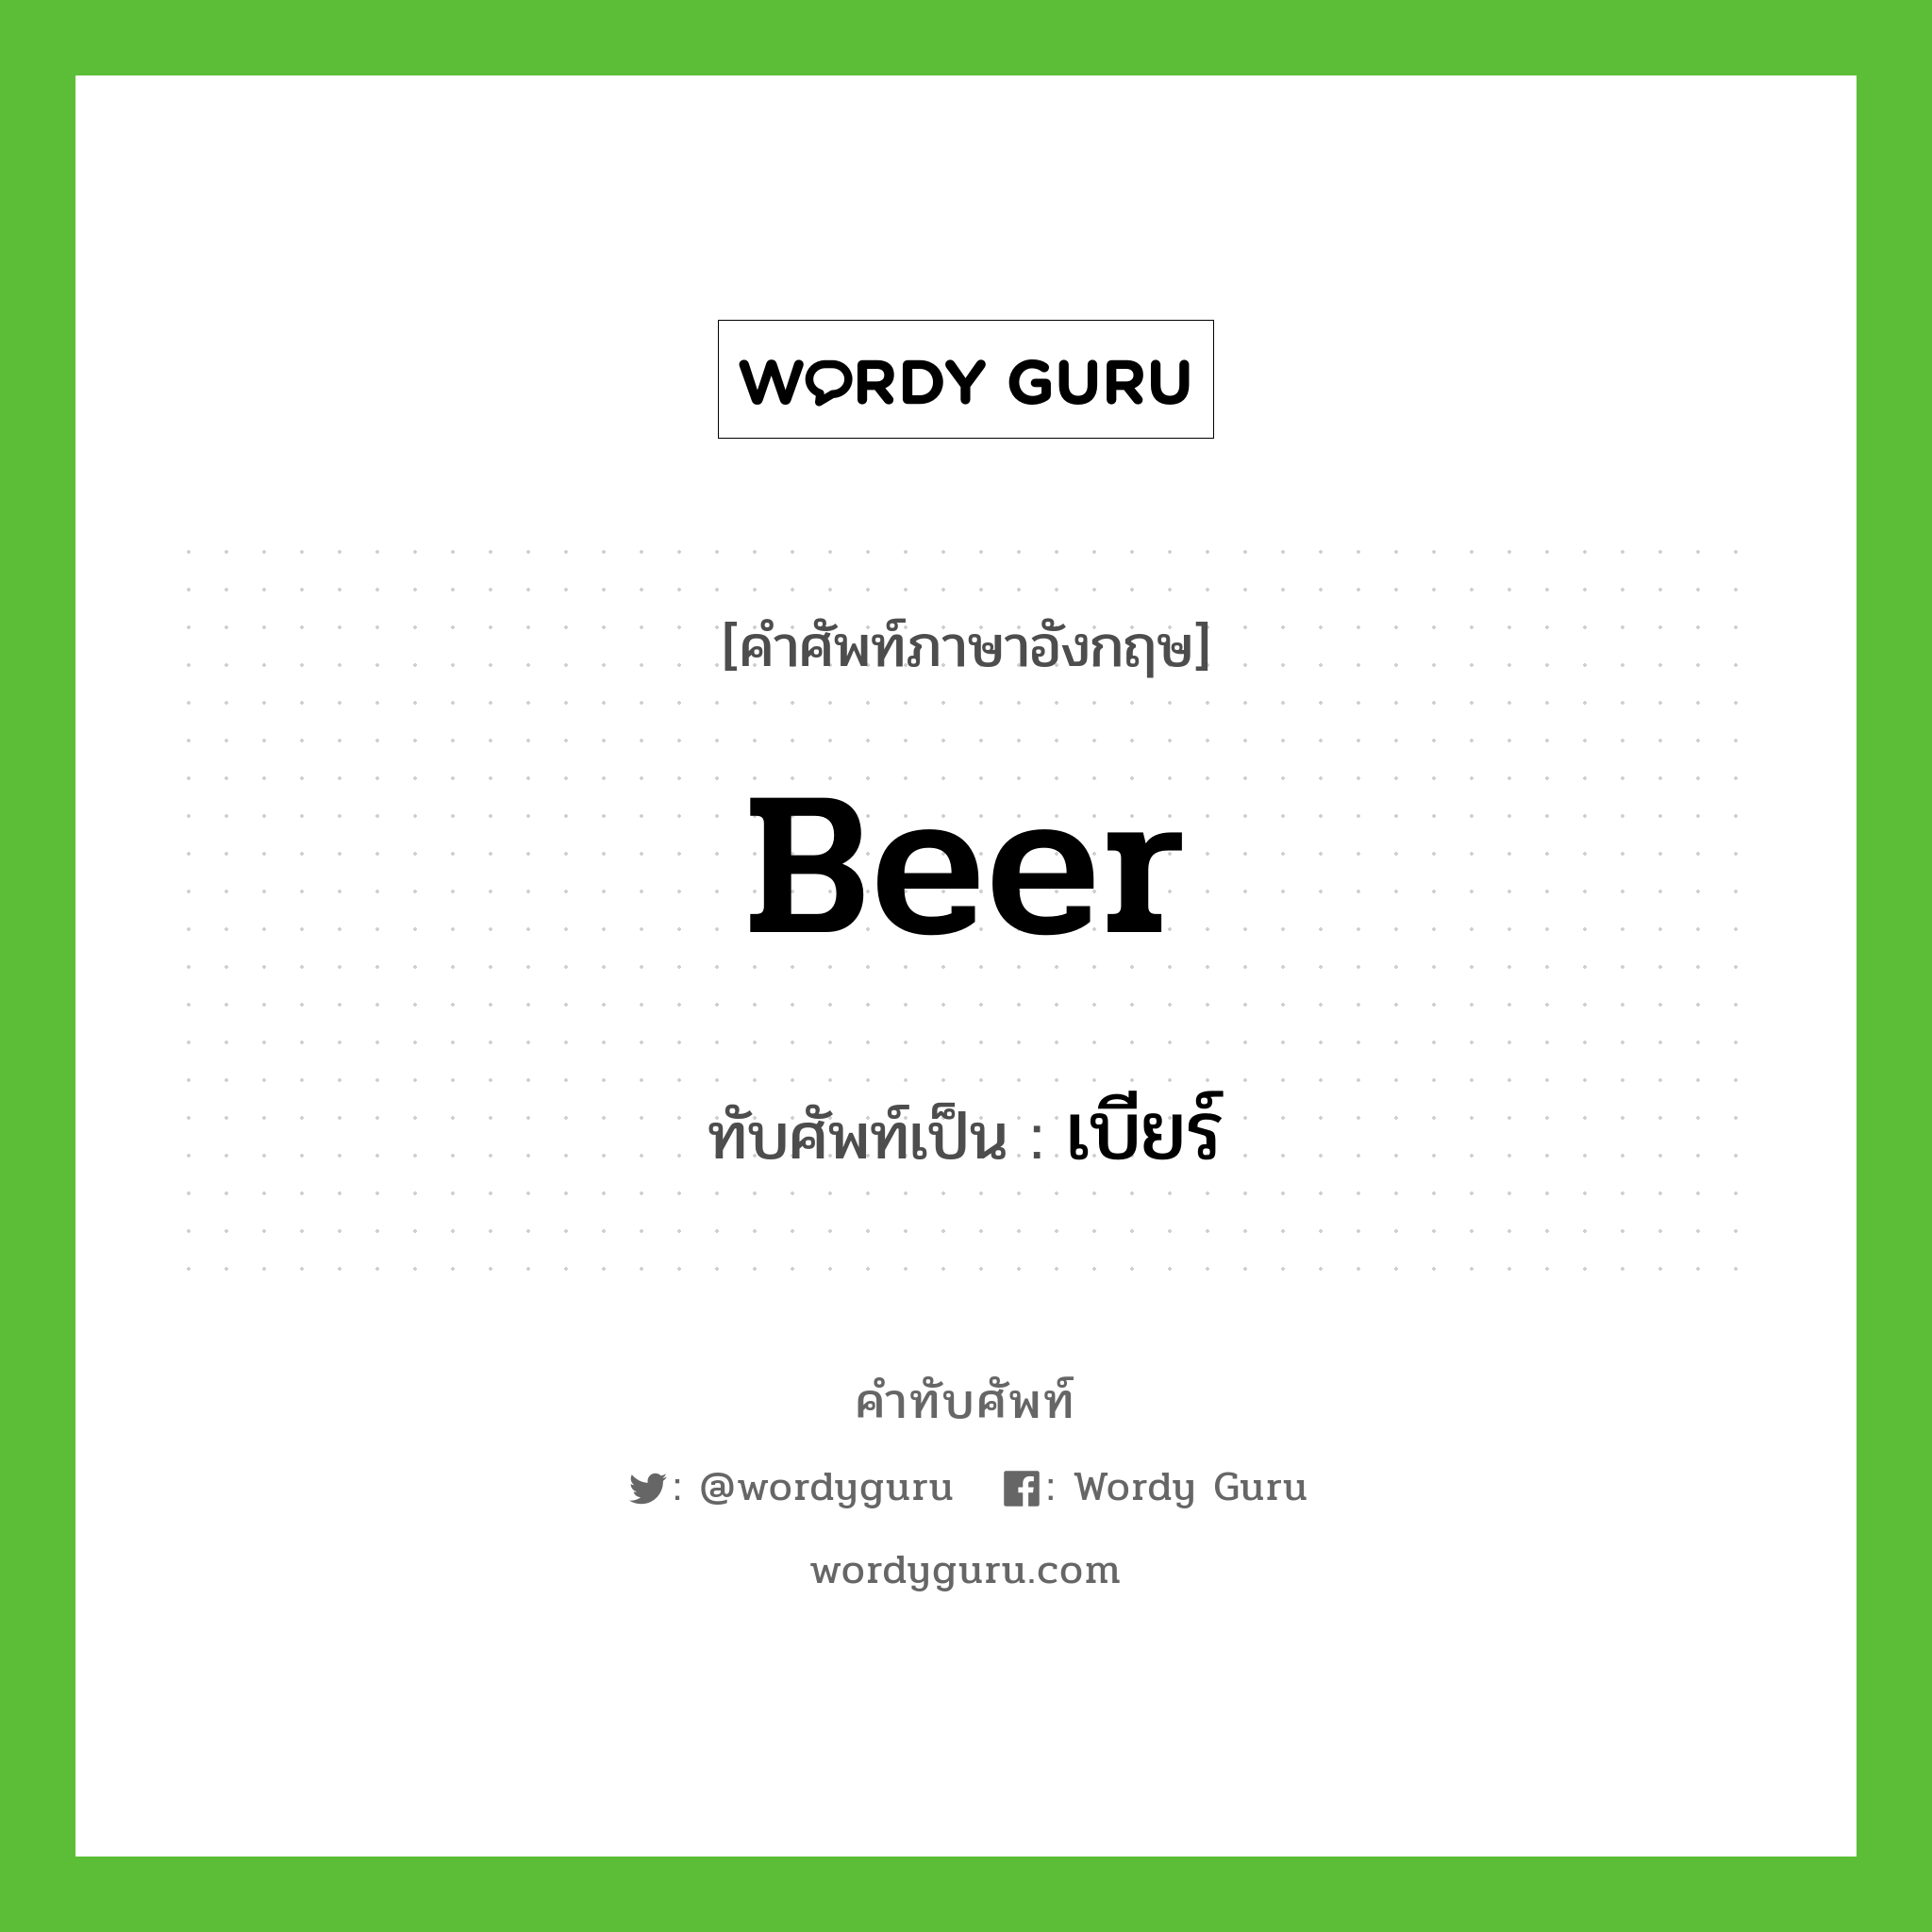 beer เขียนเป็นคำไทยว่าอะไร?, คำศัพท์ภาษาอังกฤษ beer ทับศัพท์เป็น เบียร์